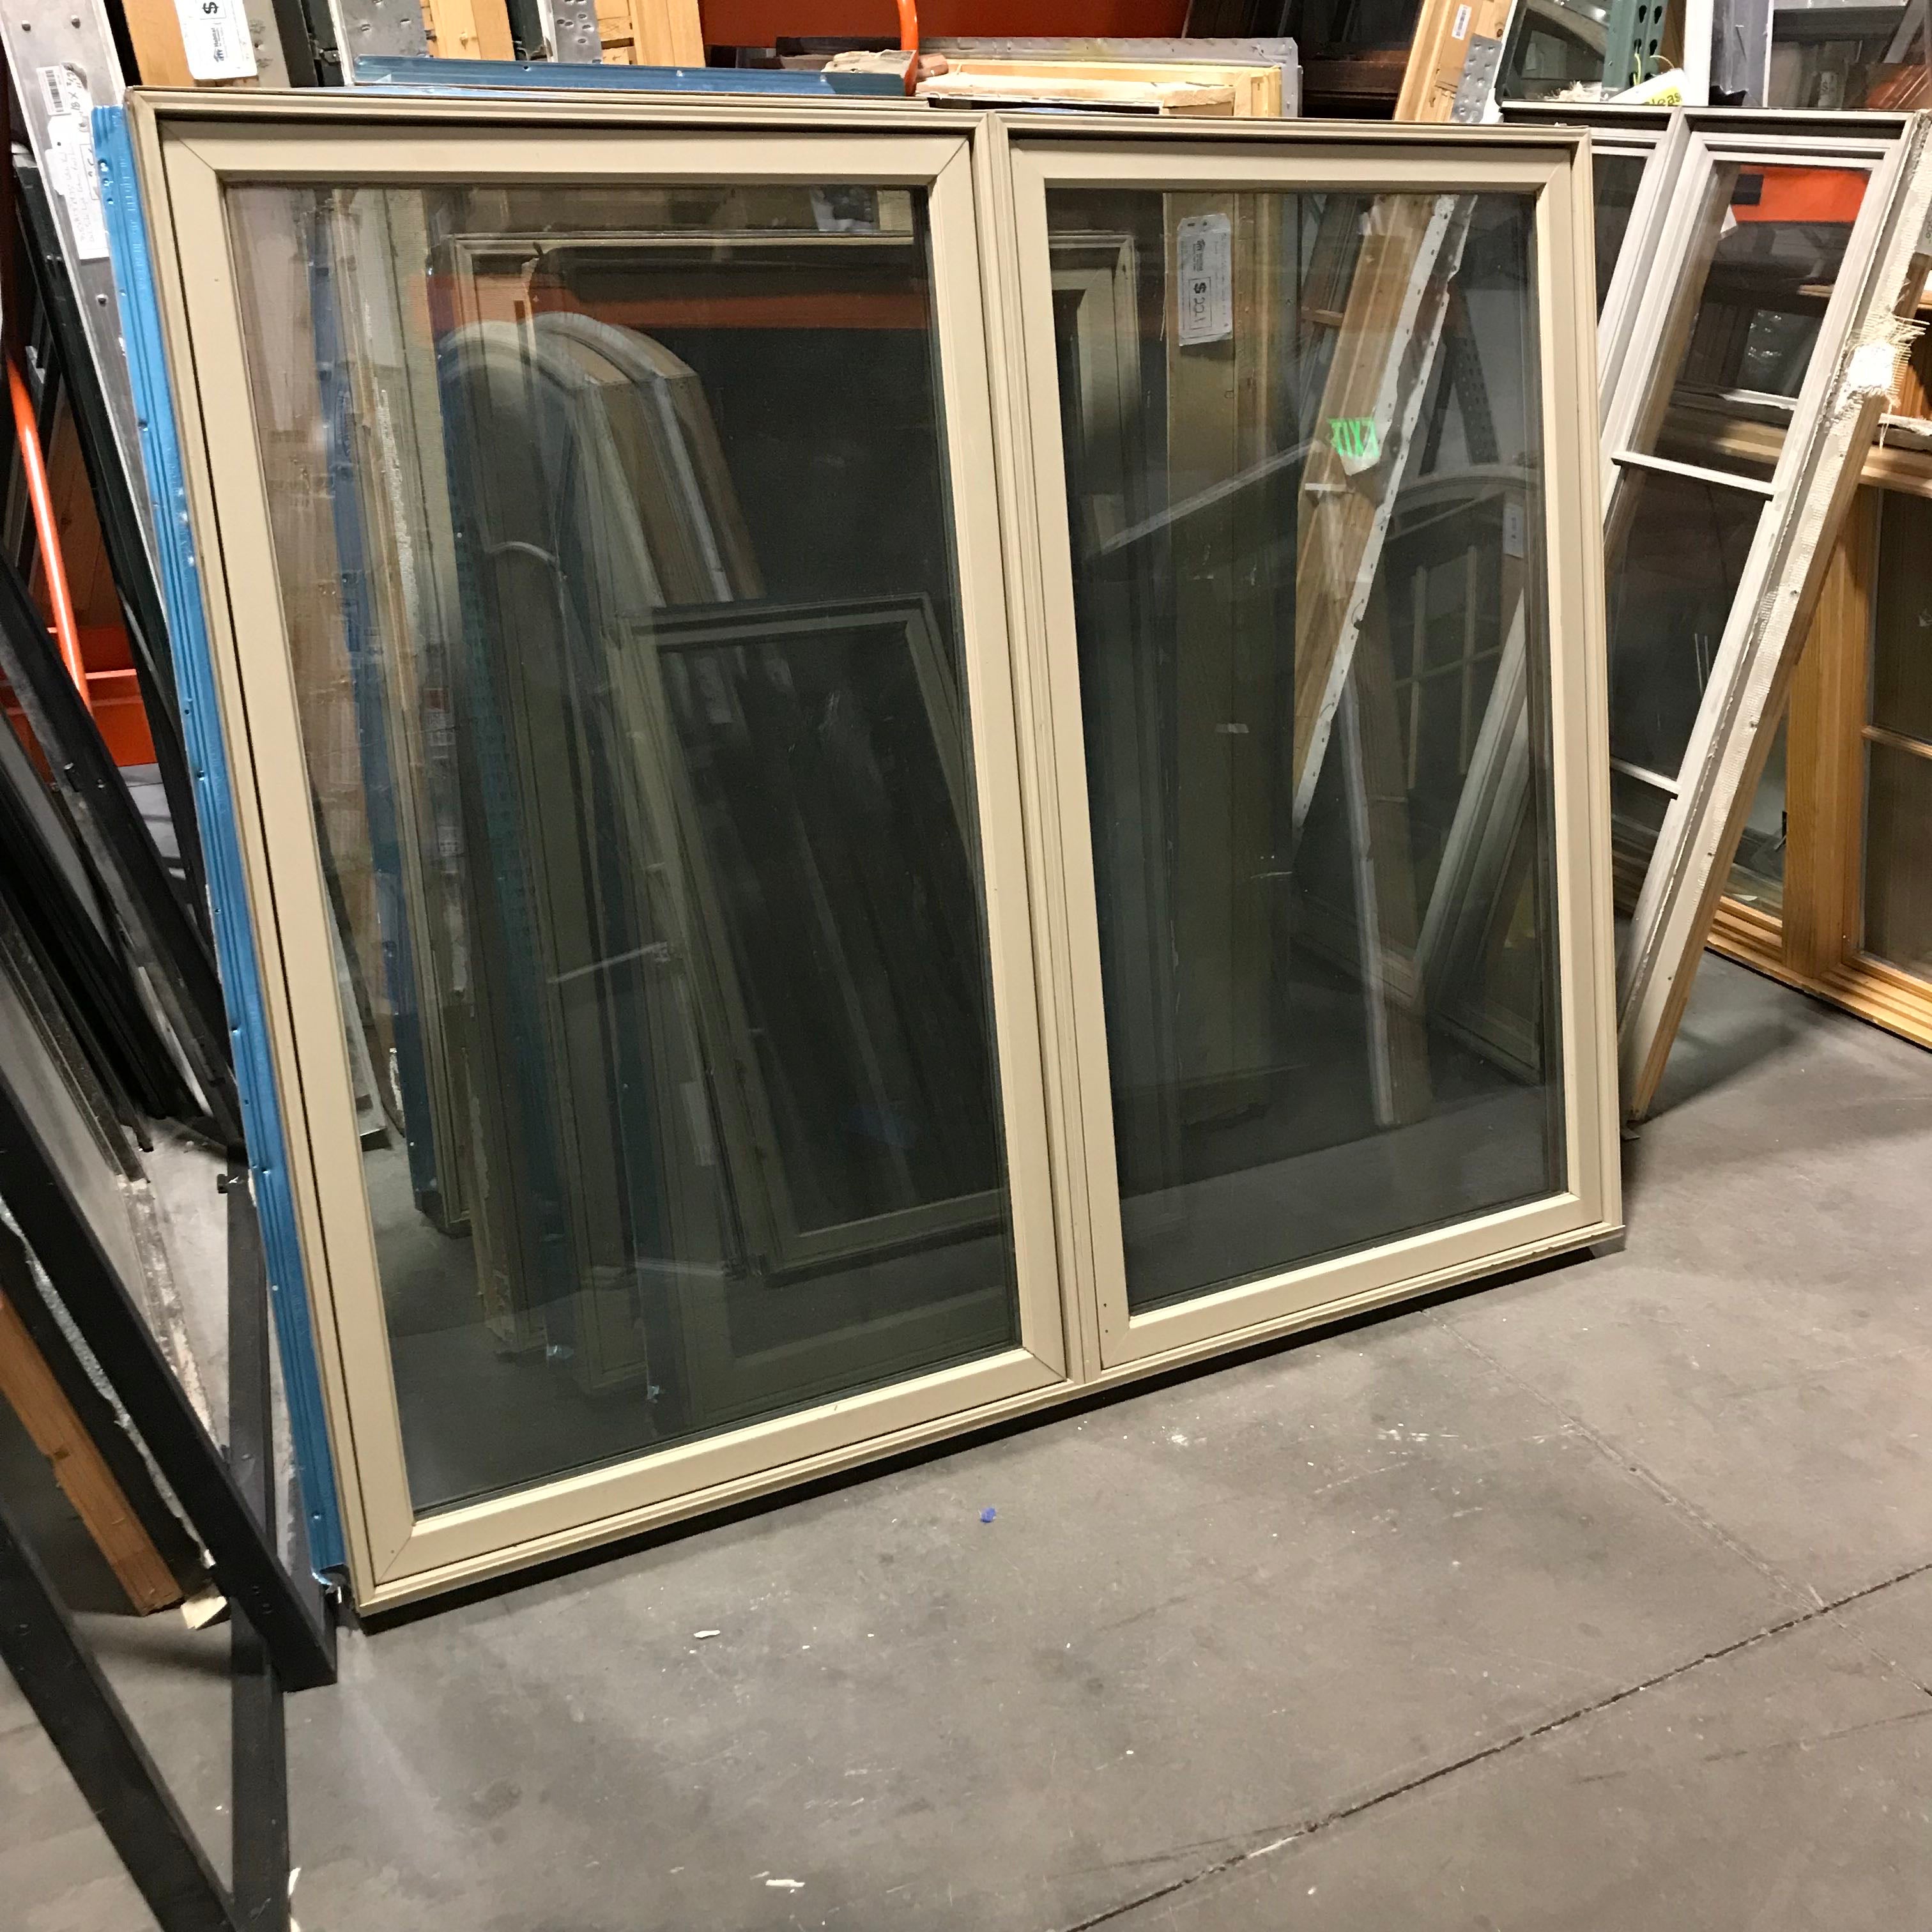 70"x 59"x 5" Tan Metal Clad Double Casement Exterior Window